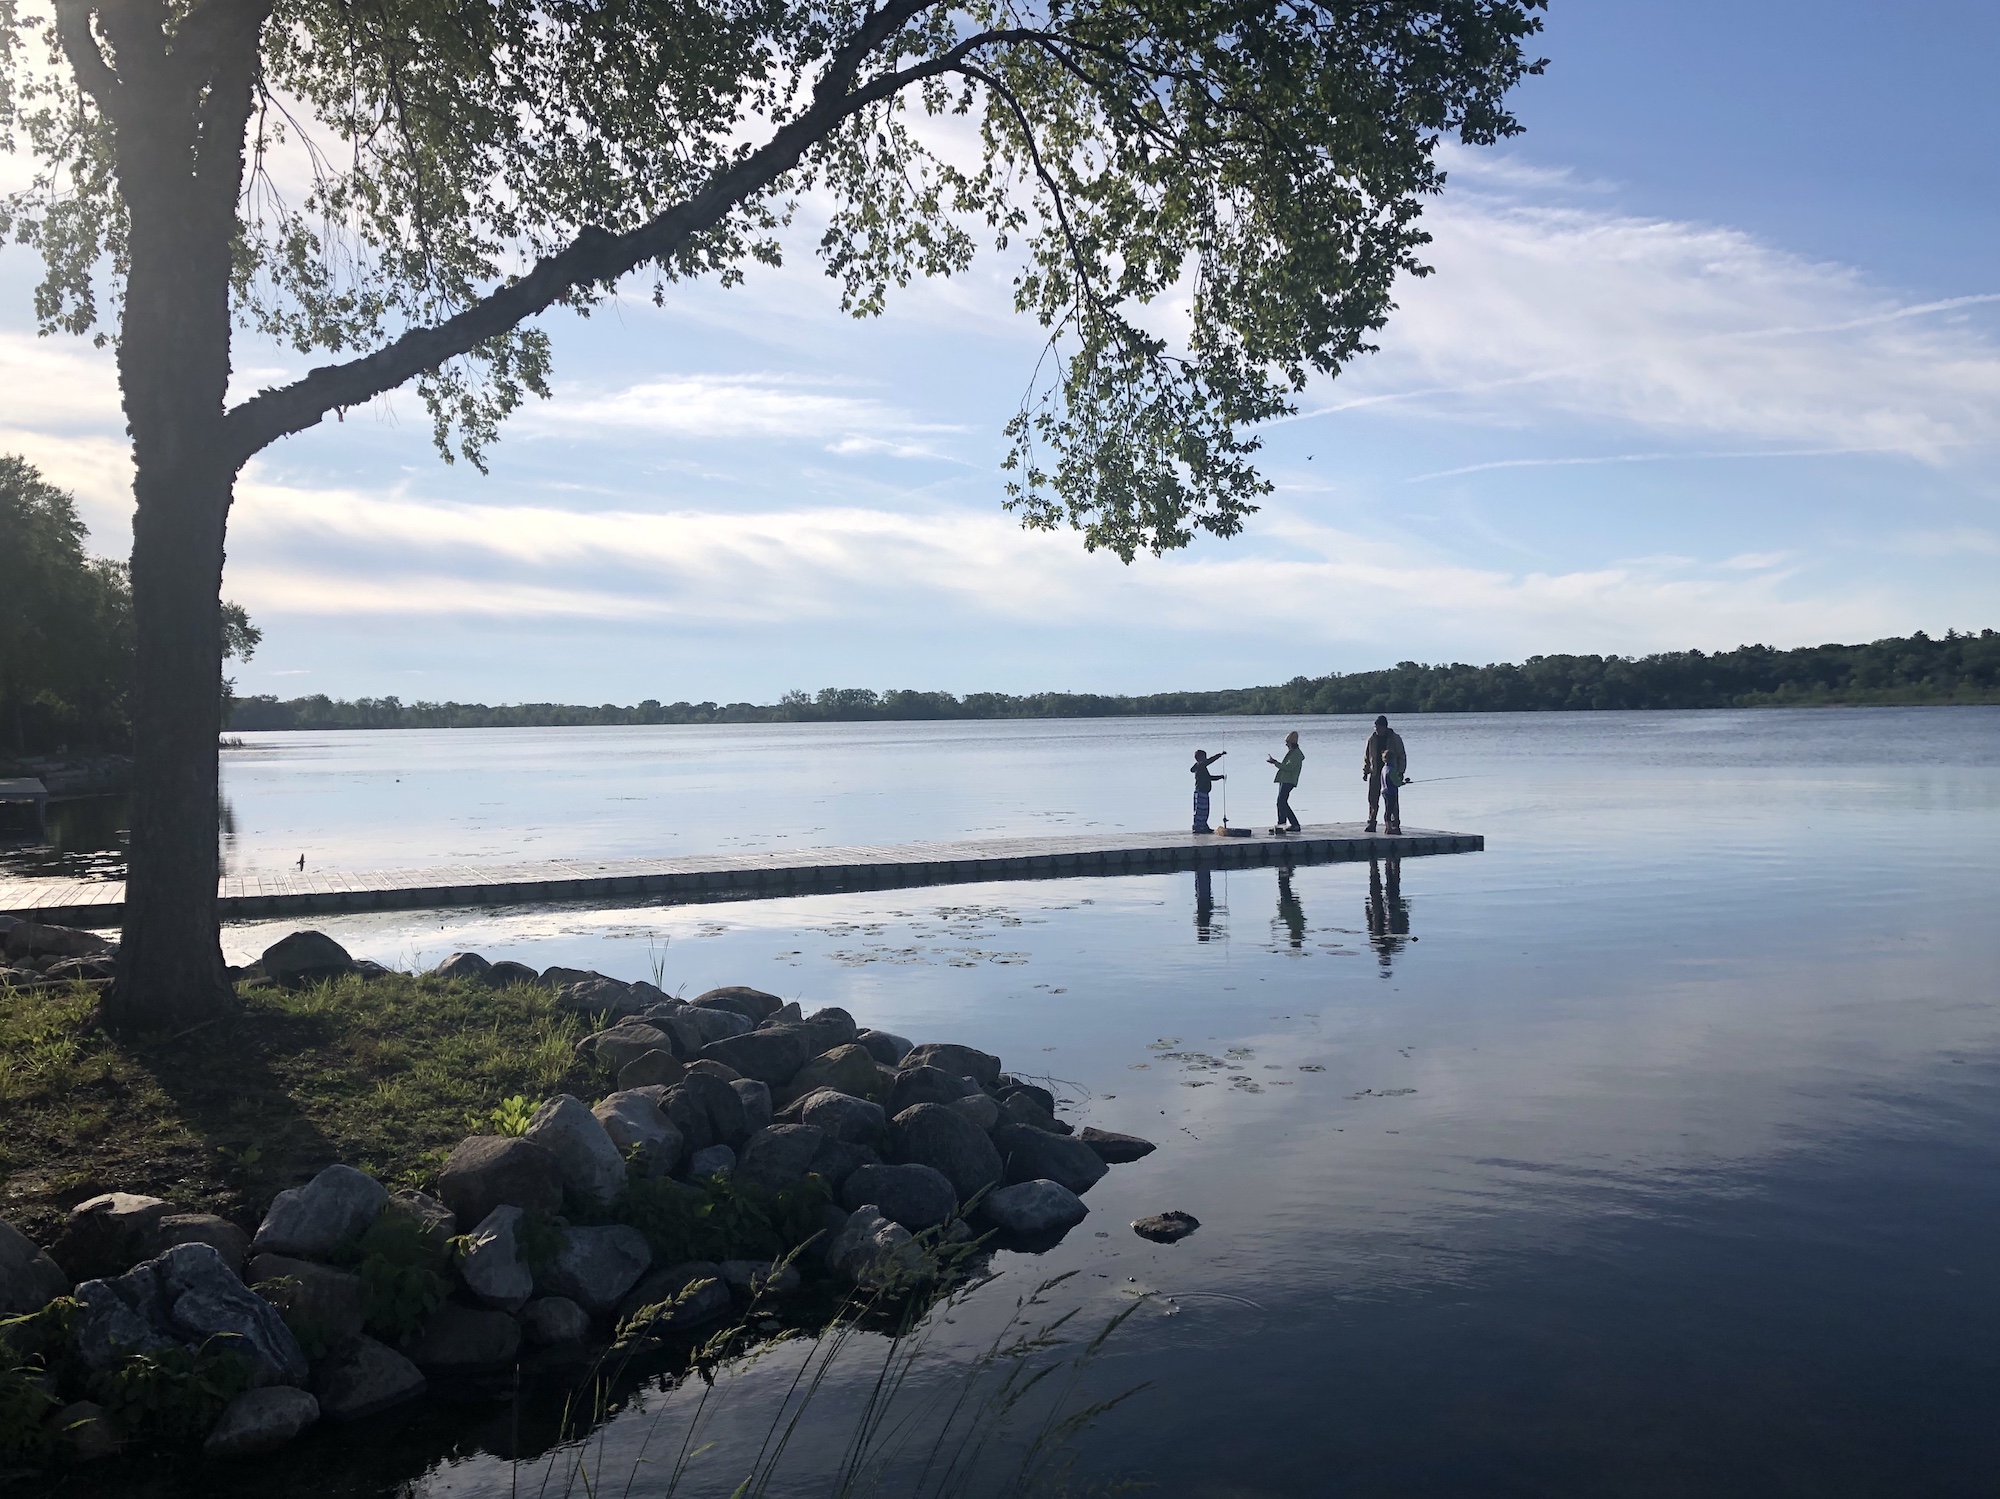 Lake Wingra on June 13, 2019.